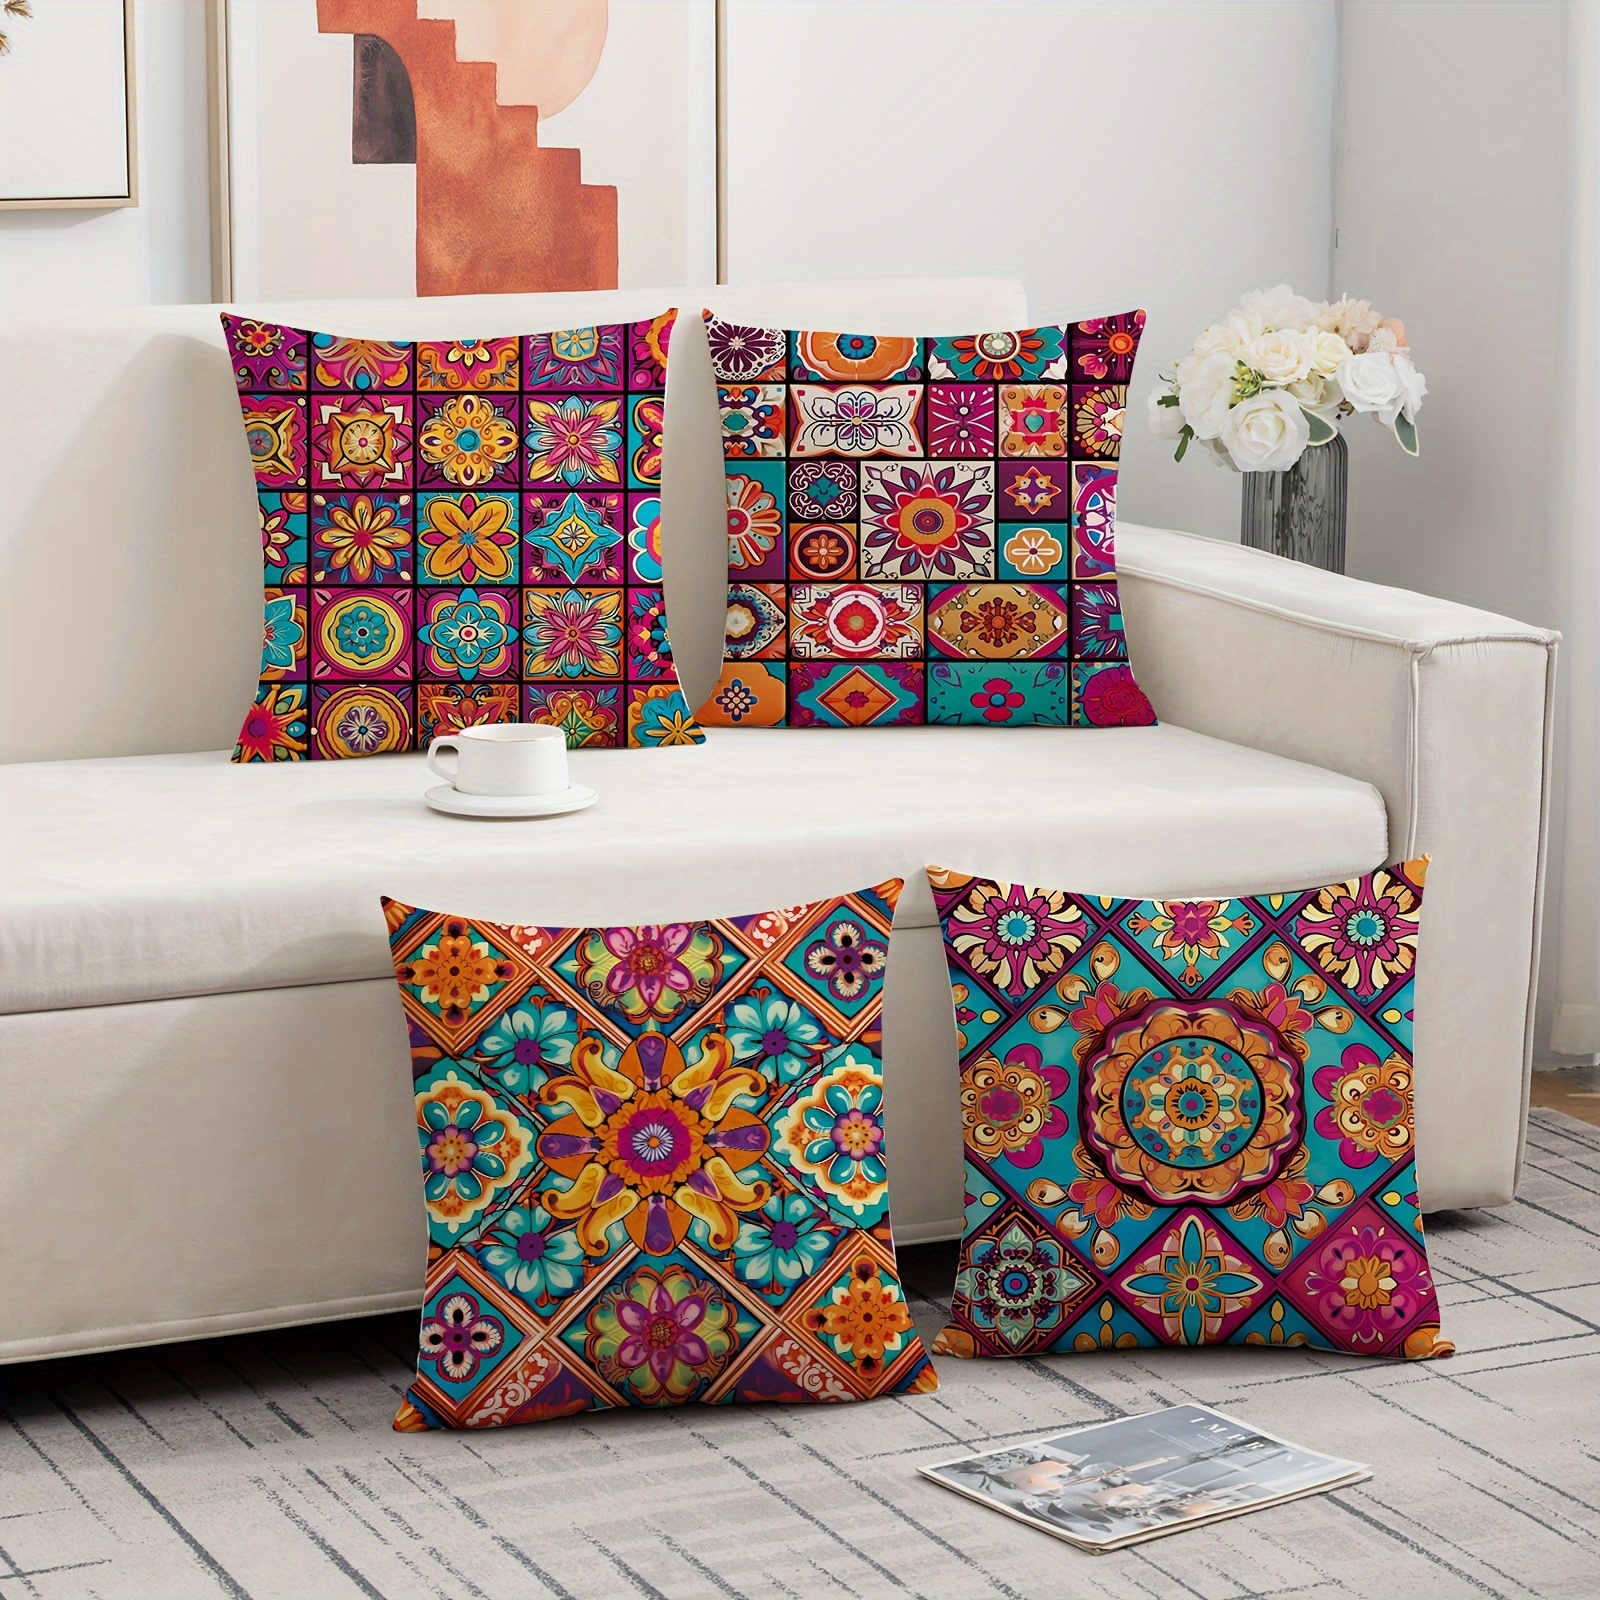 

4 housses de coussin de style bohème, 45x45 cm, motif ethnique traditionnel mandala coloré, taies d'oreiller décoratives pour canapé, hôtel, décoration de maison d'hôtes